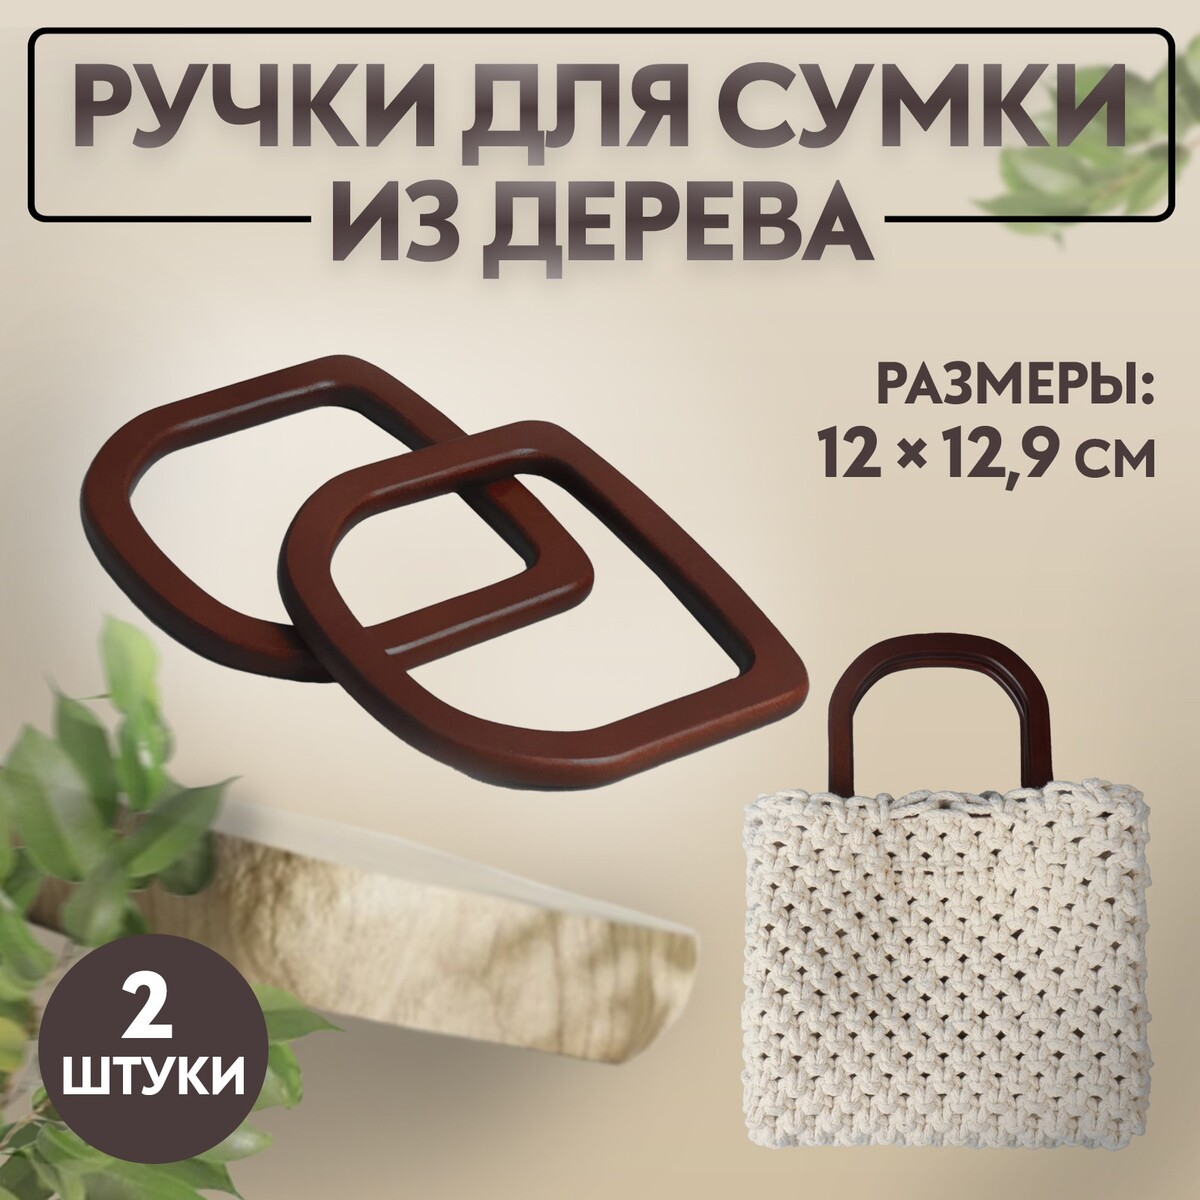 Ручки для сумки деревянные, 12 × 12,9 см, 2 шт, цвет коричневый ручки для сумки 2 шт бамбук 17 × 13 15 5 × 11 5 см темно коричневый